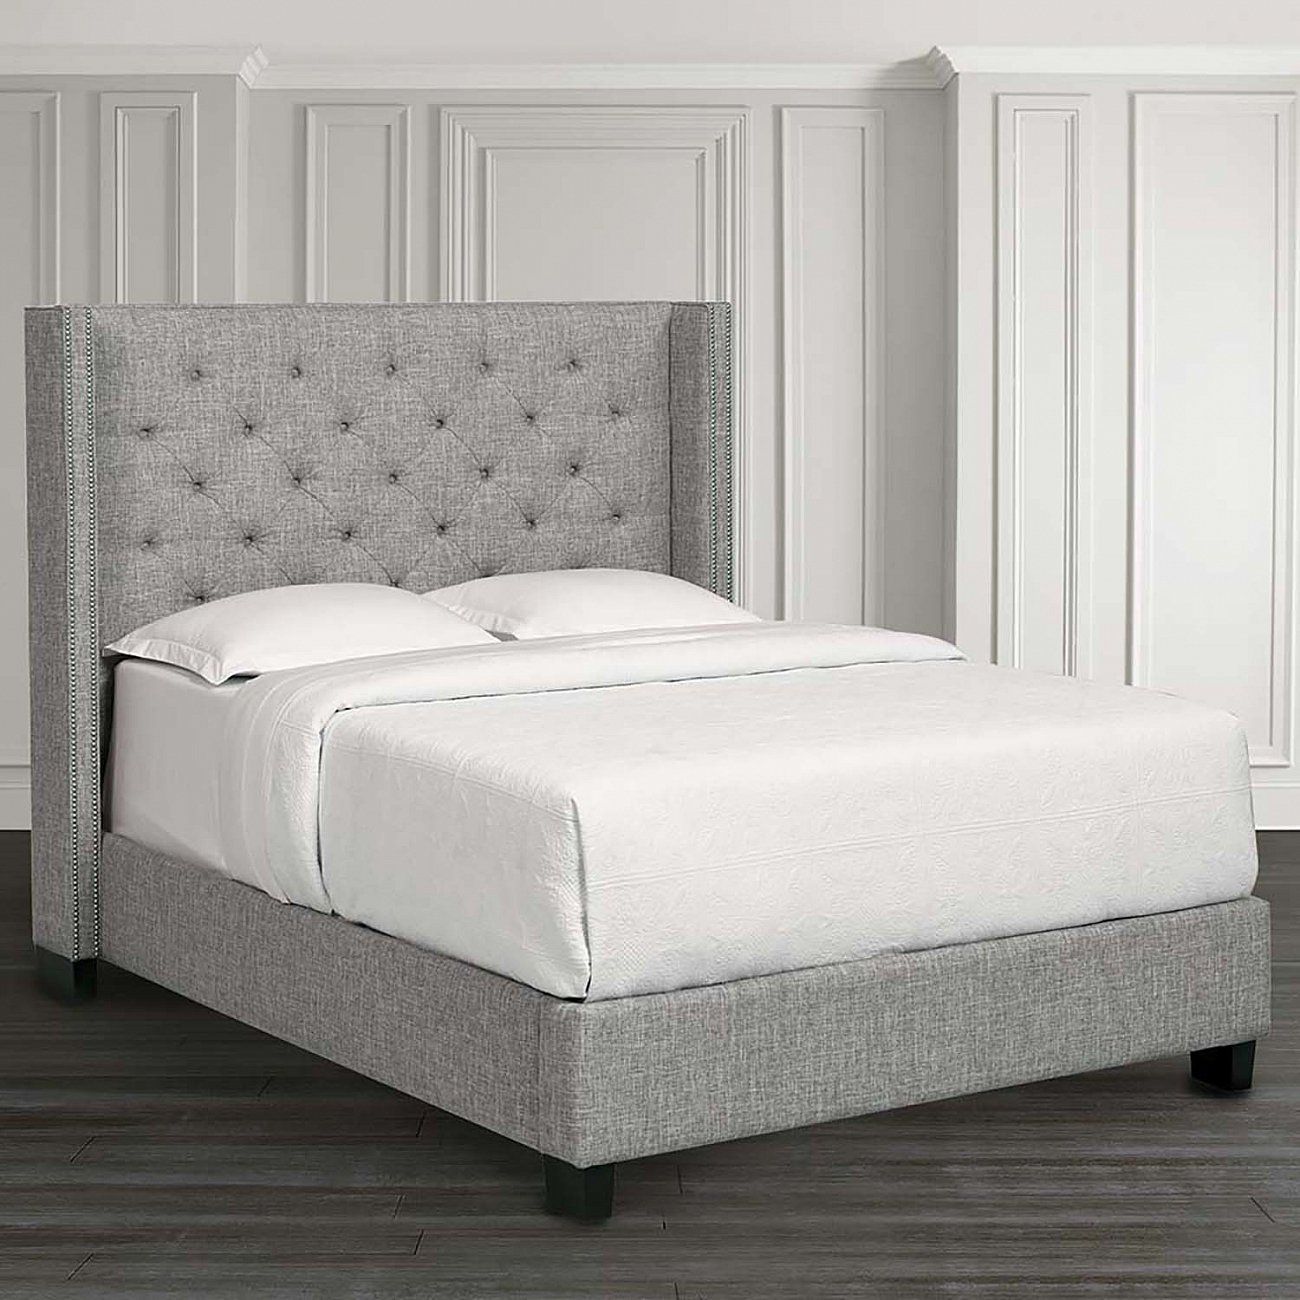 Кровать двуспальная с мягким изголовьем 180х200 см синяя Wing